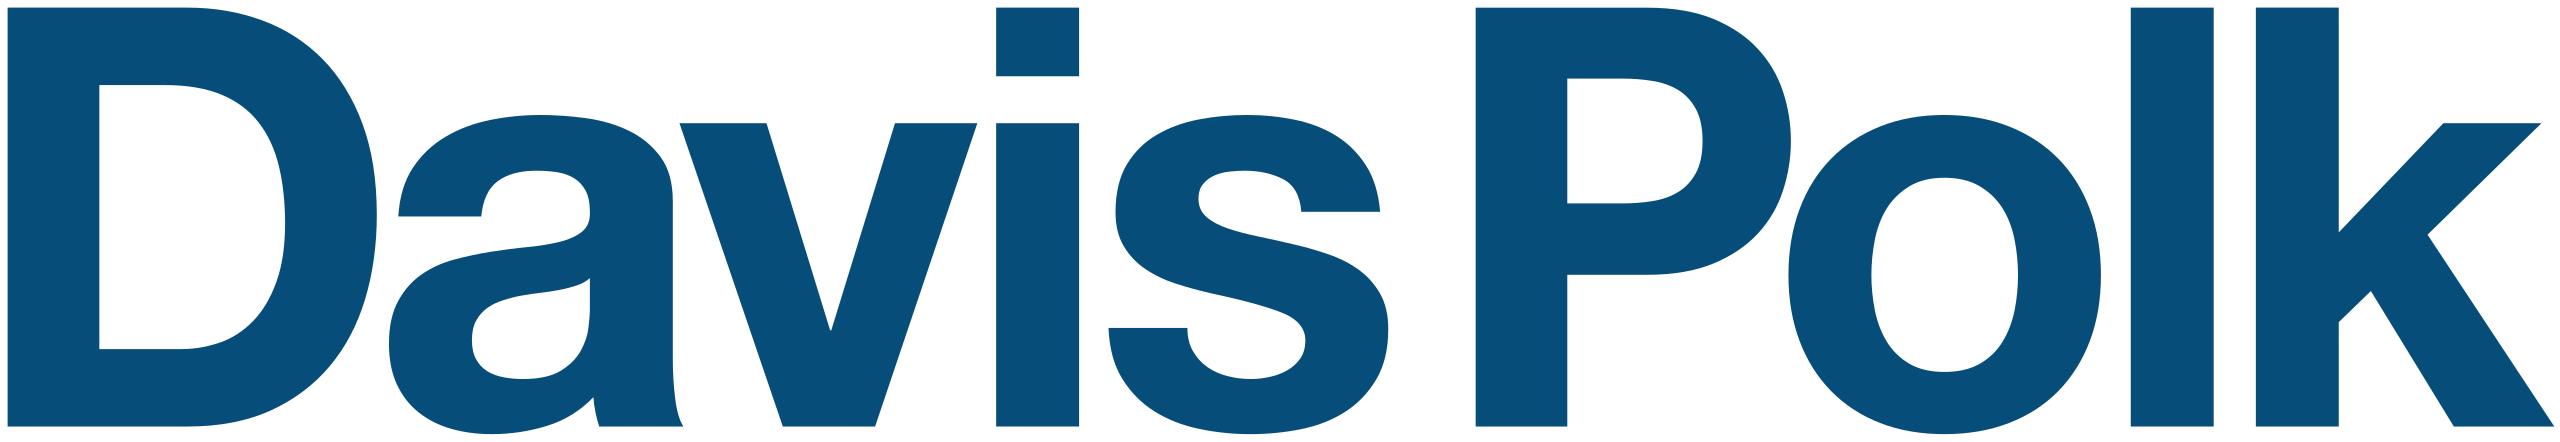 File:Davis Polk logo.svg - Wikimedia Commons